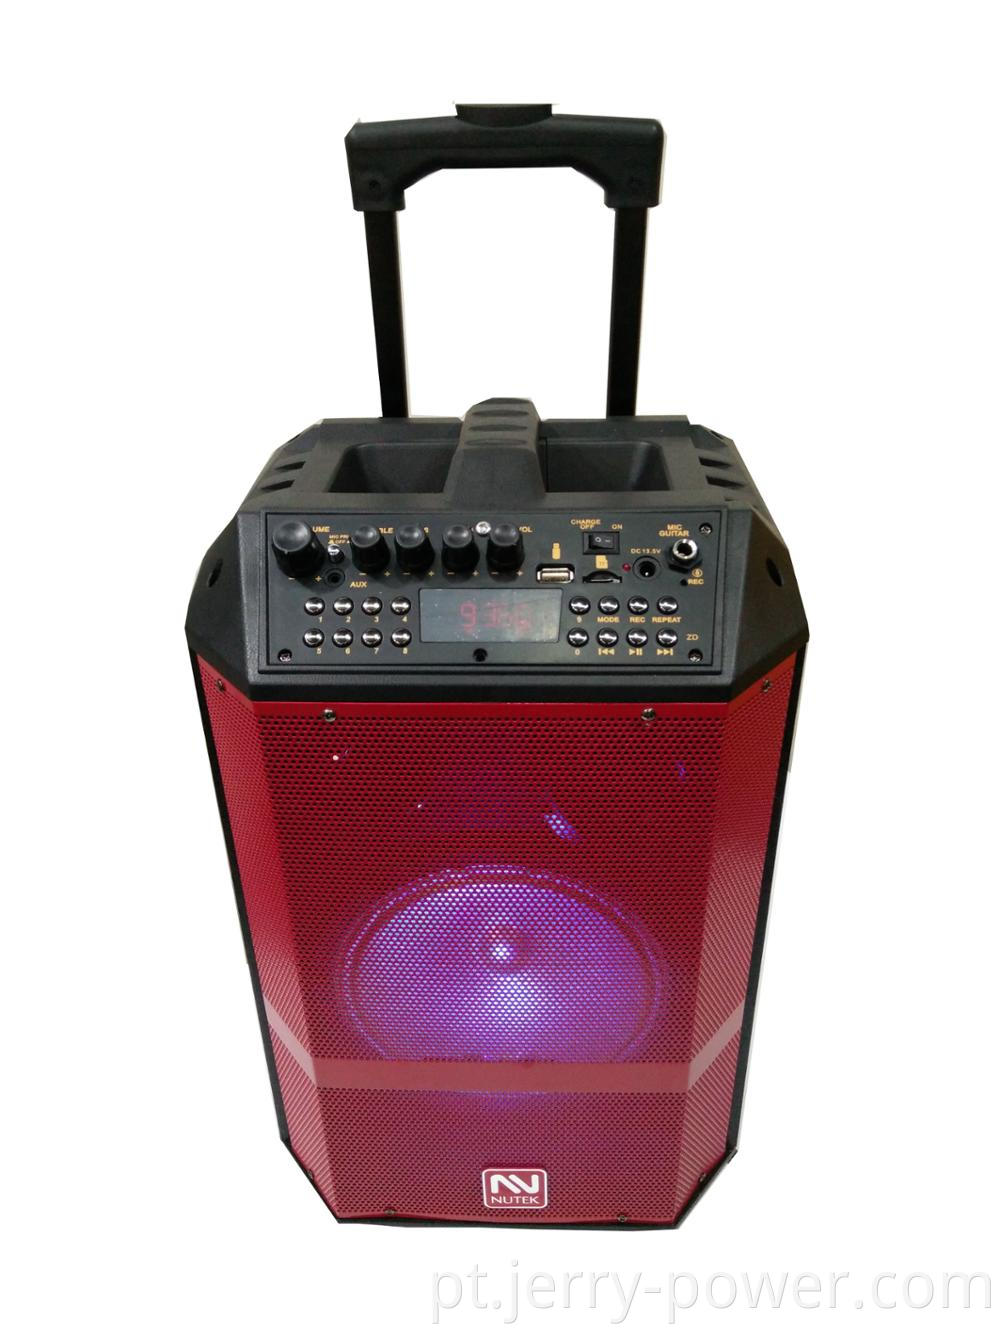 Microfone Sem Fio Especial Sistema de Música Jerry Digital Portátil Recarregável Carrinho Alto-falantes